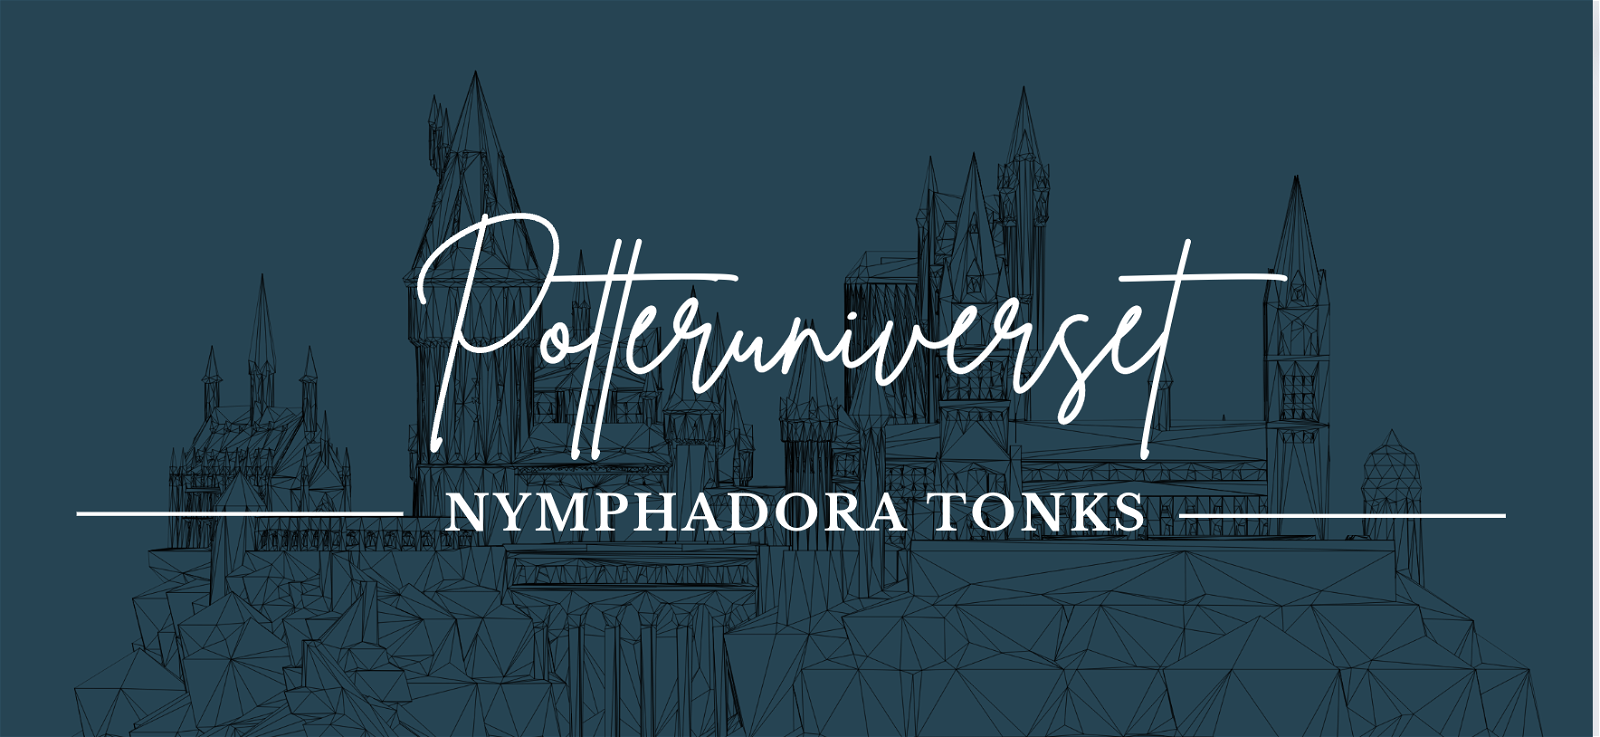 Potteruniverset: Nymphadora Tonks